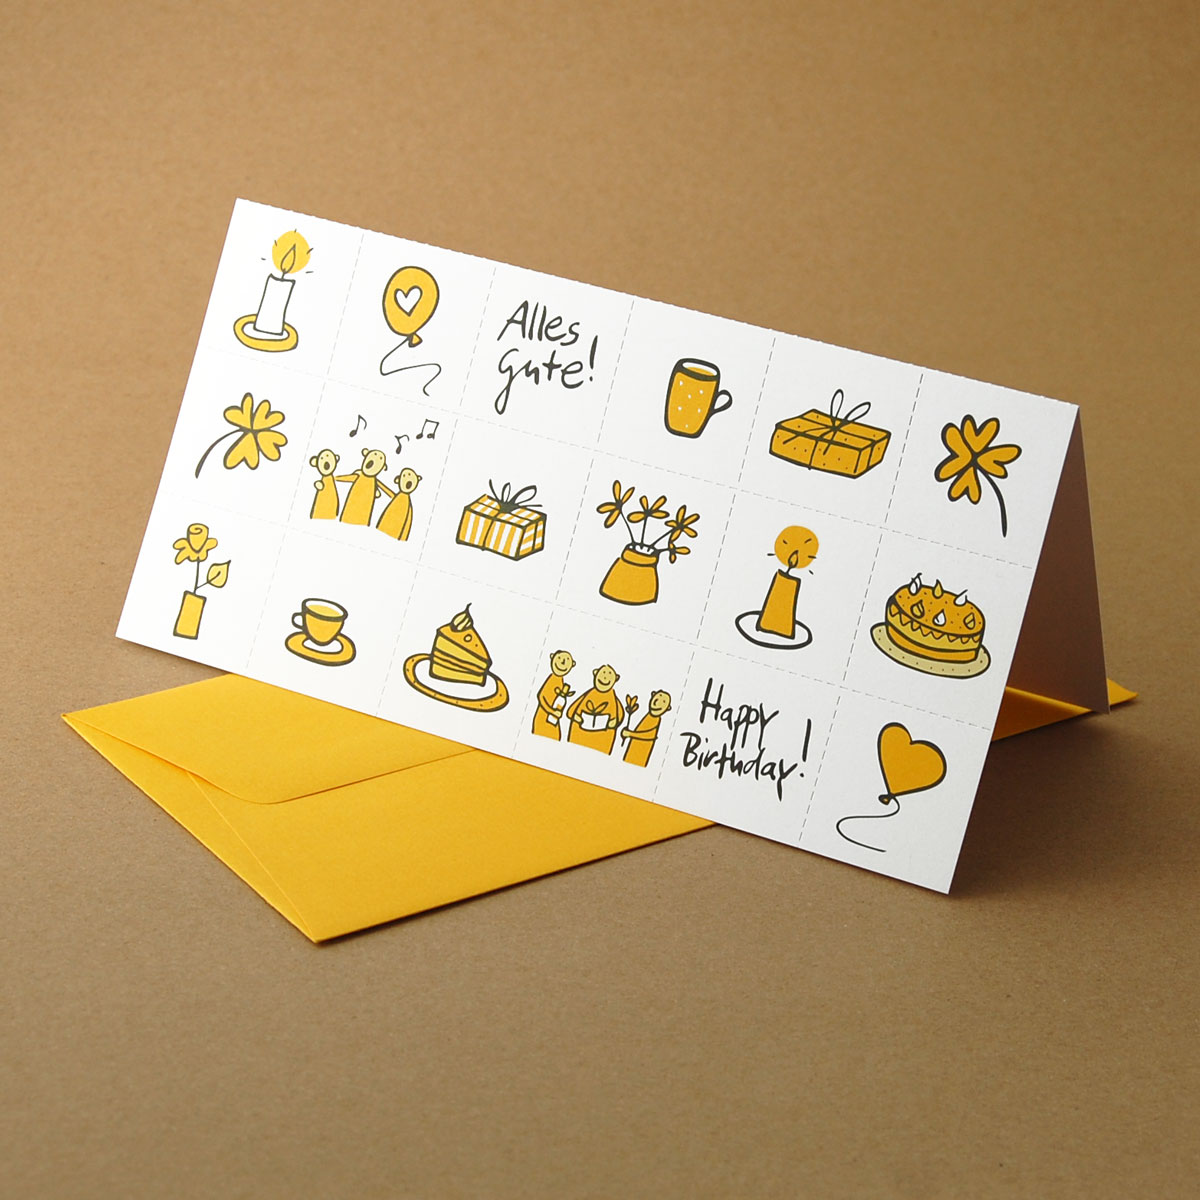 Happy Birthday! Alles Gute! gelbe Glückwunschkarten mit gelben Umschlägen